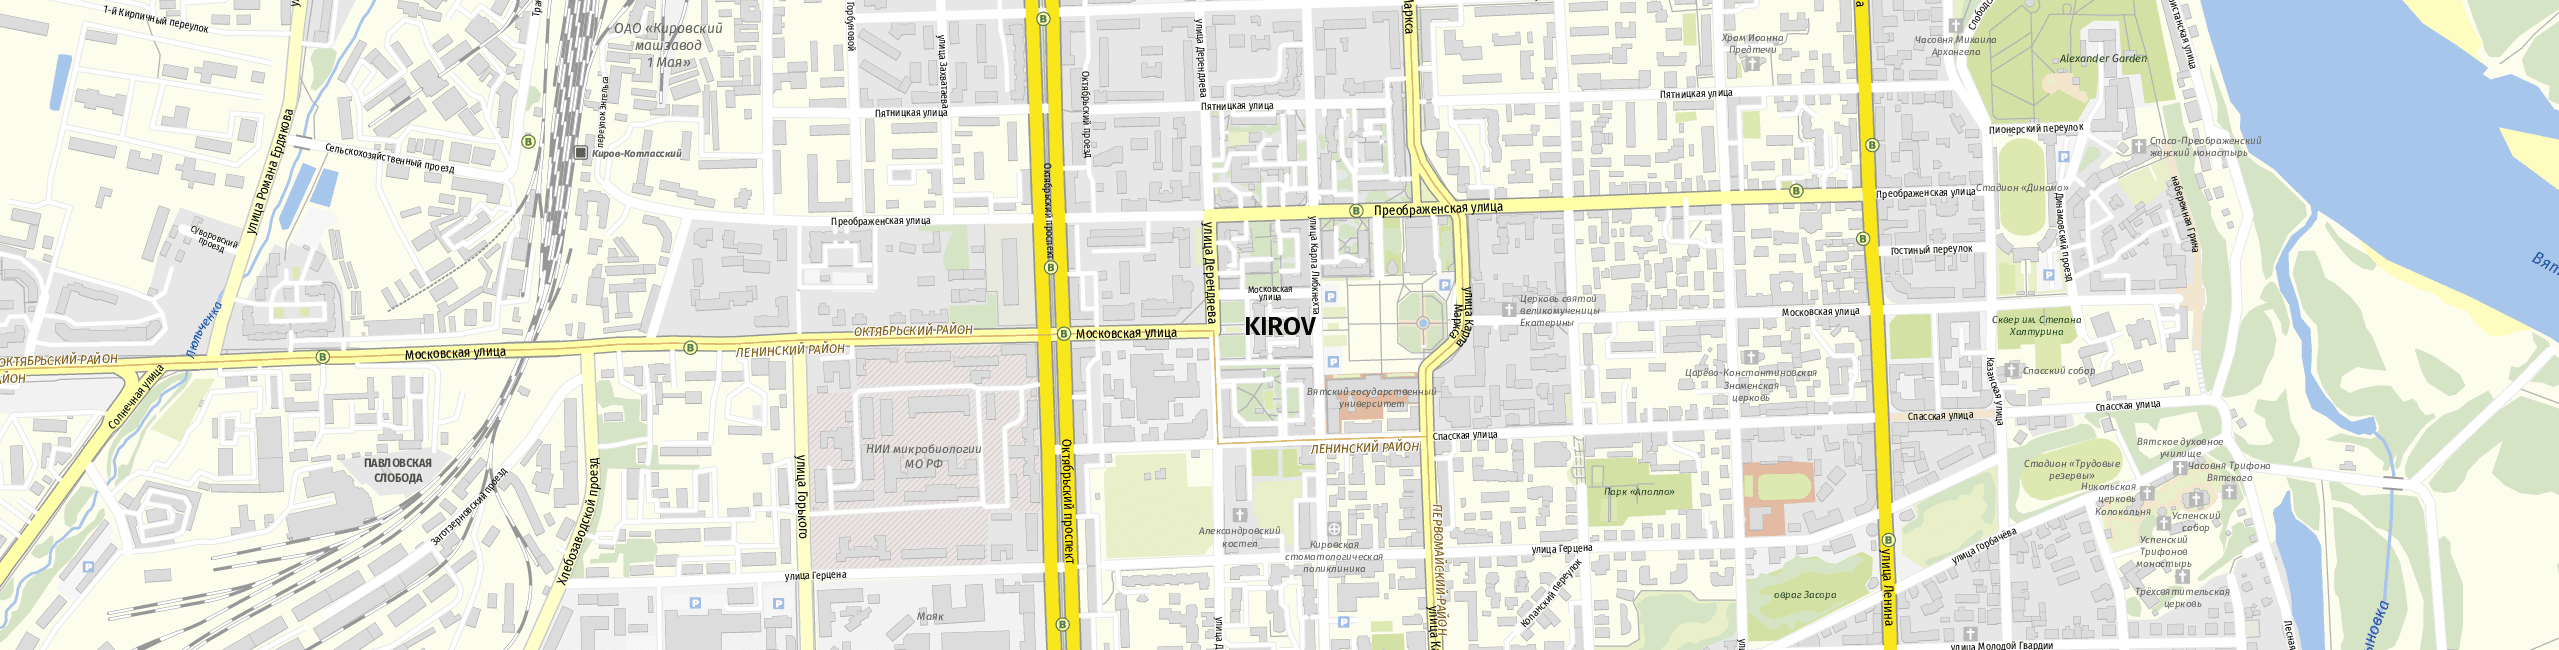 Stadtplan Kirow zum Downloaden.